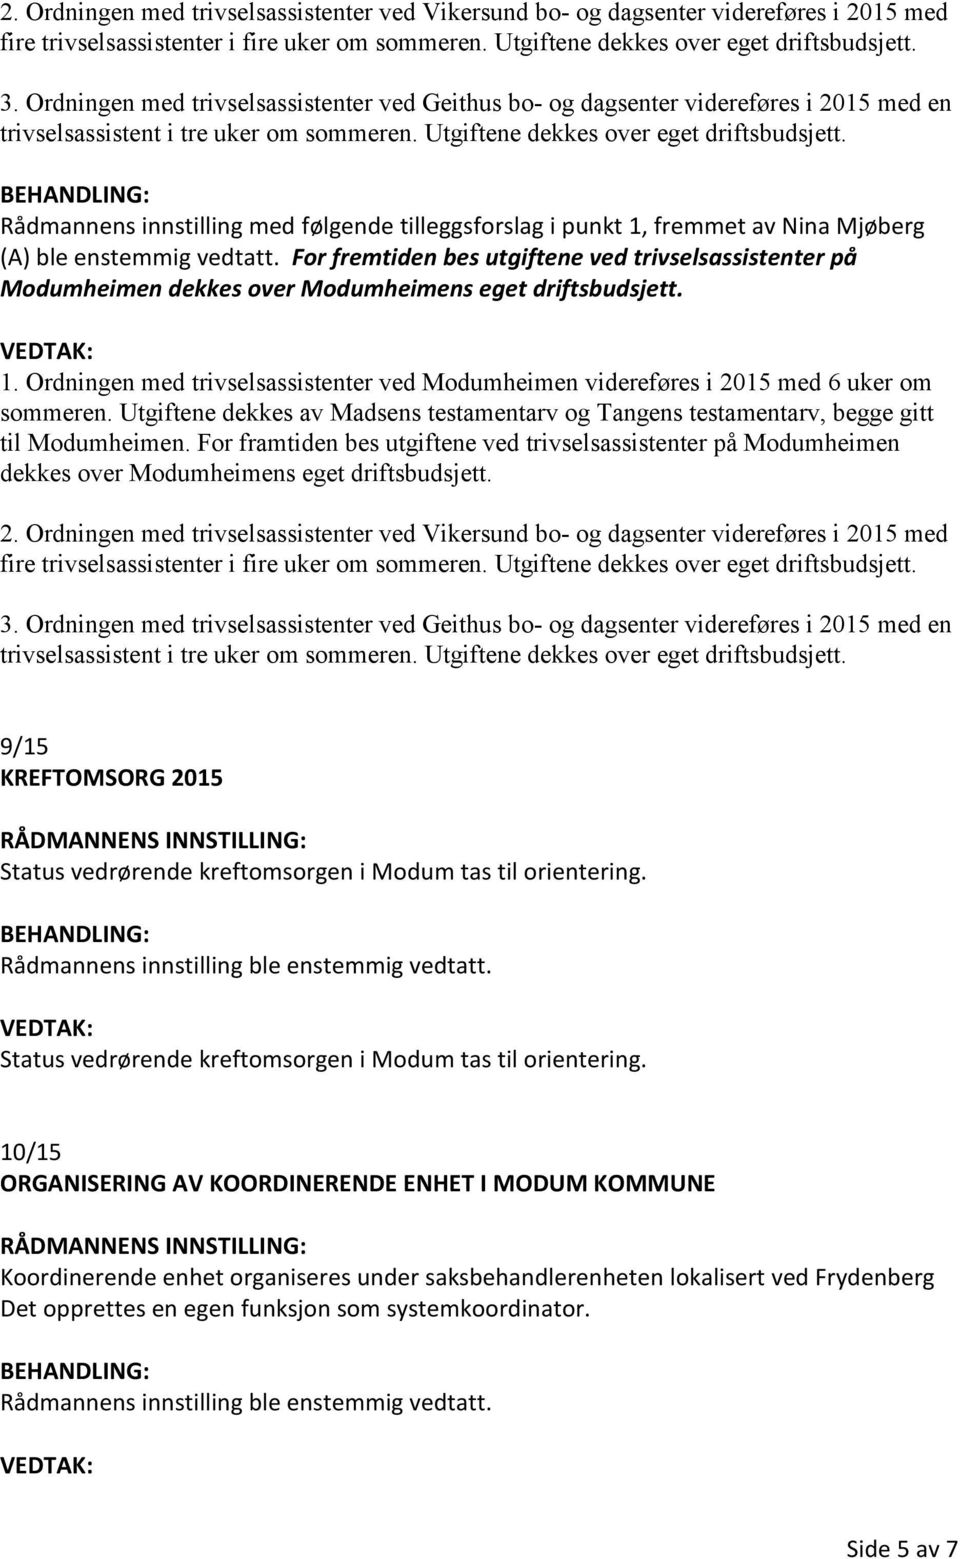 Rådmannens innstilling med følgende tilleggsforslag i punkt 1, fremmet av Nina Mjøberg (A) ble enstemmig vedtatt.